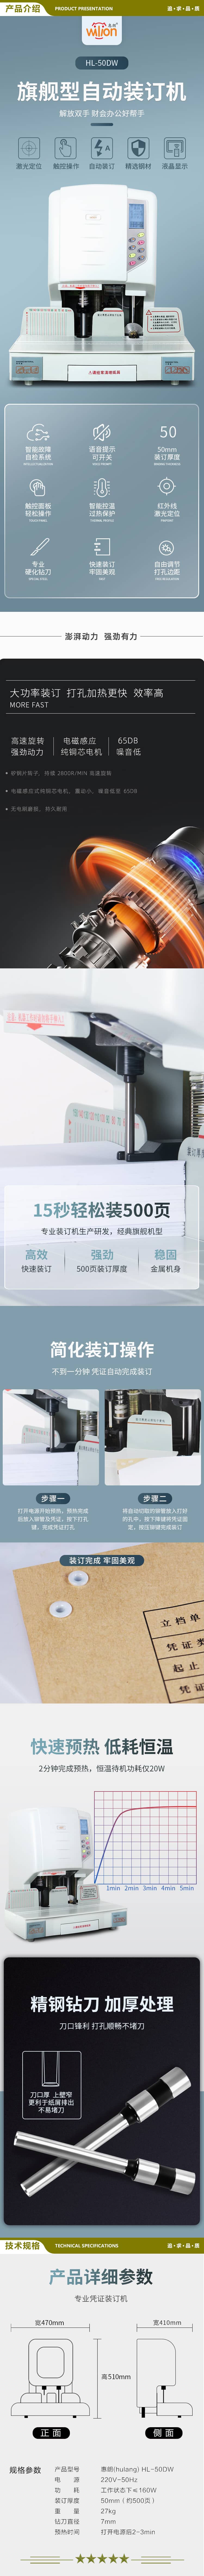 惠朗 huilang 50DW 自动财务凭证装订机 50mm 液晶显示 2.jpg